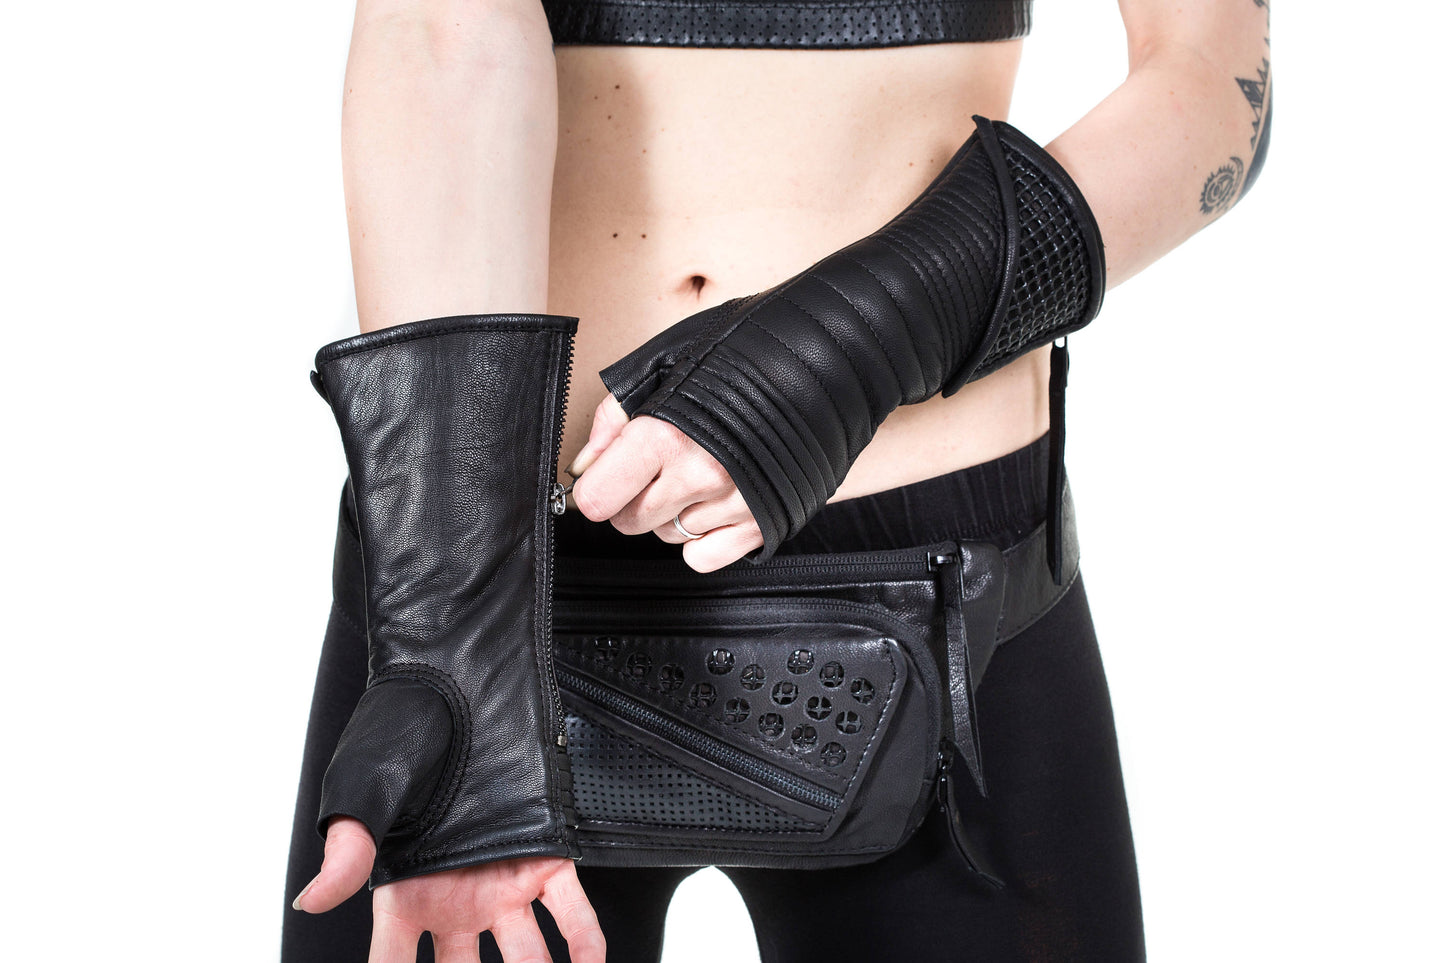 KAVALRY NET KOMBAT Black Leather Fingerless Gloves